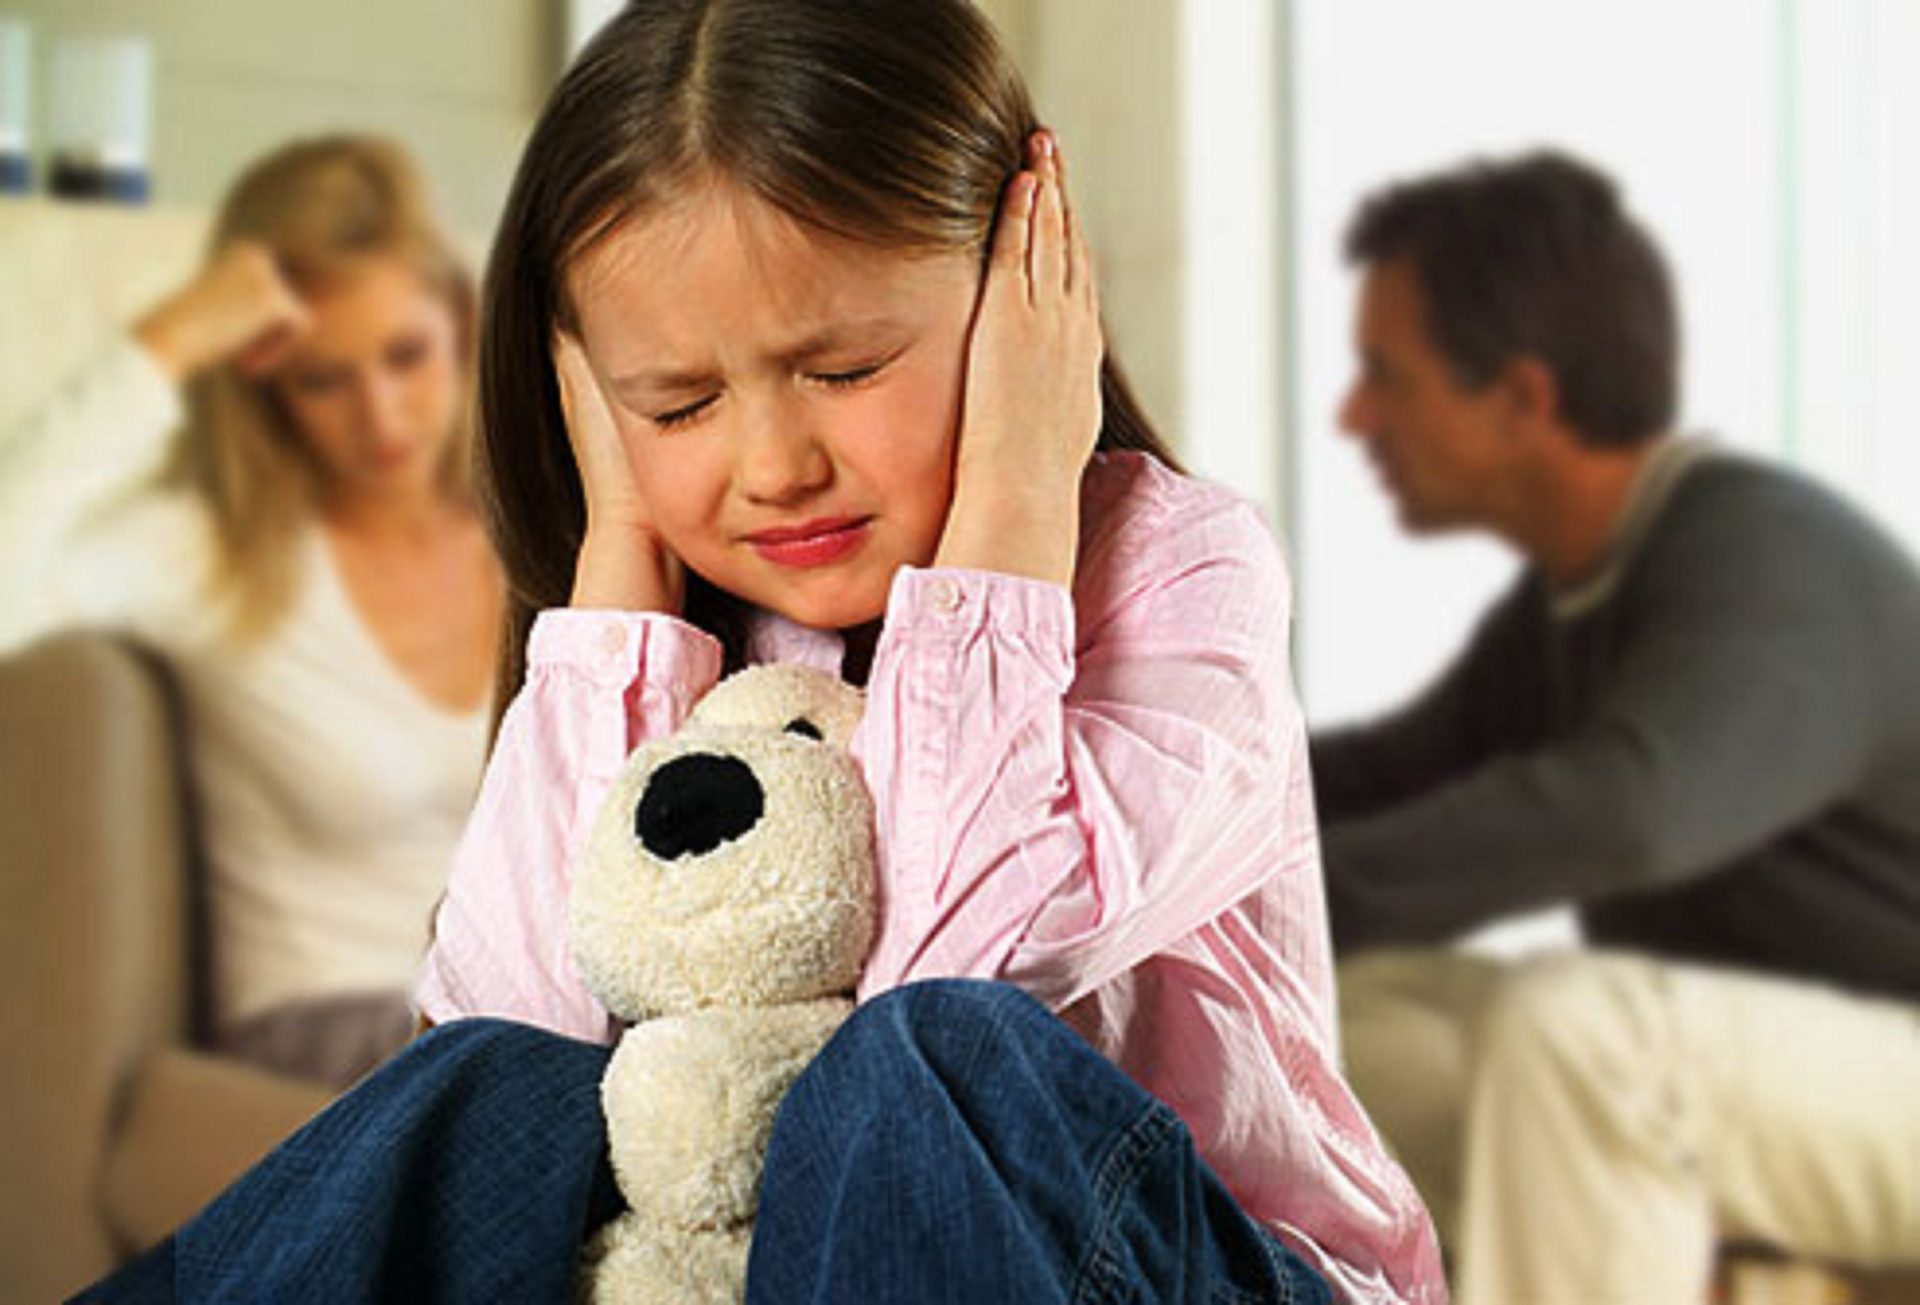 Видео после развода. Родители ругаются. "Дети и стресс". Ссора родителей. Ребенок в семье.